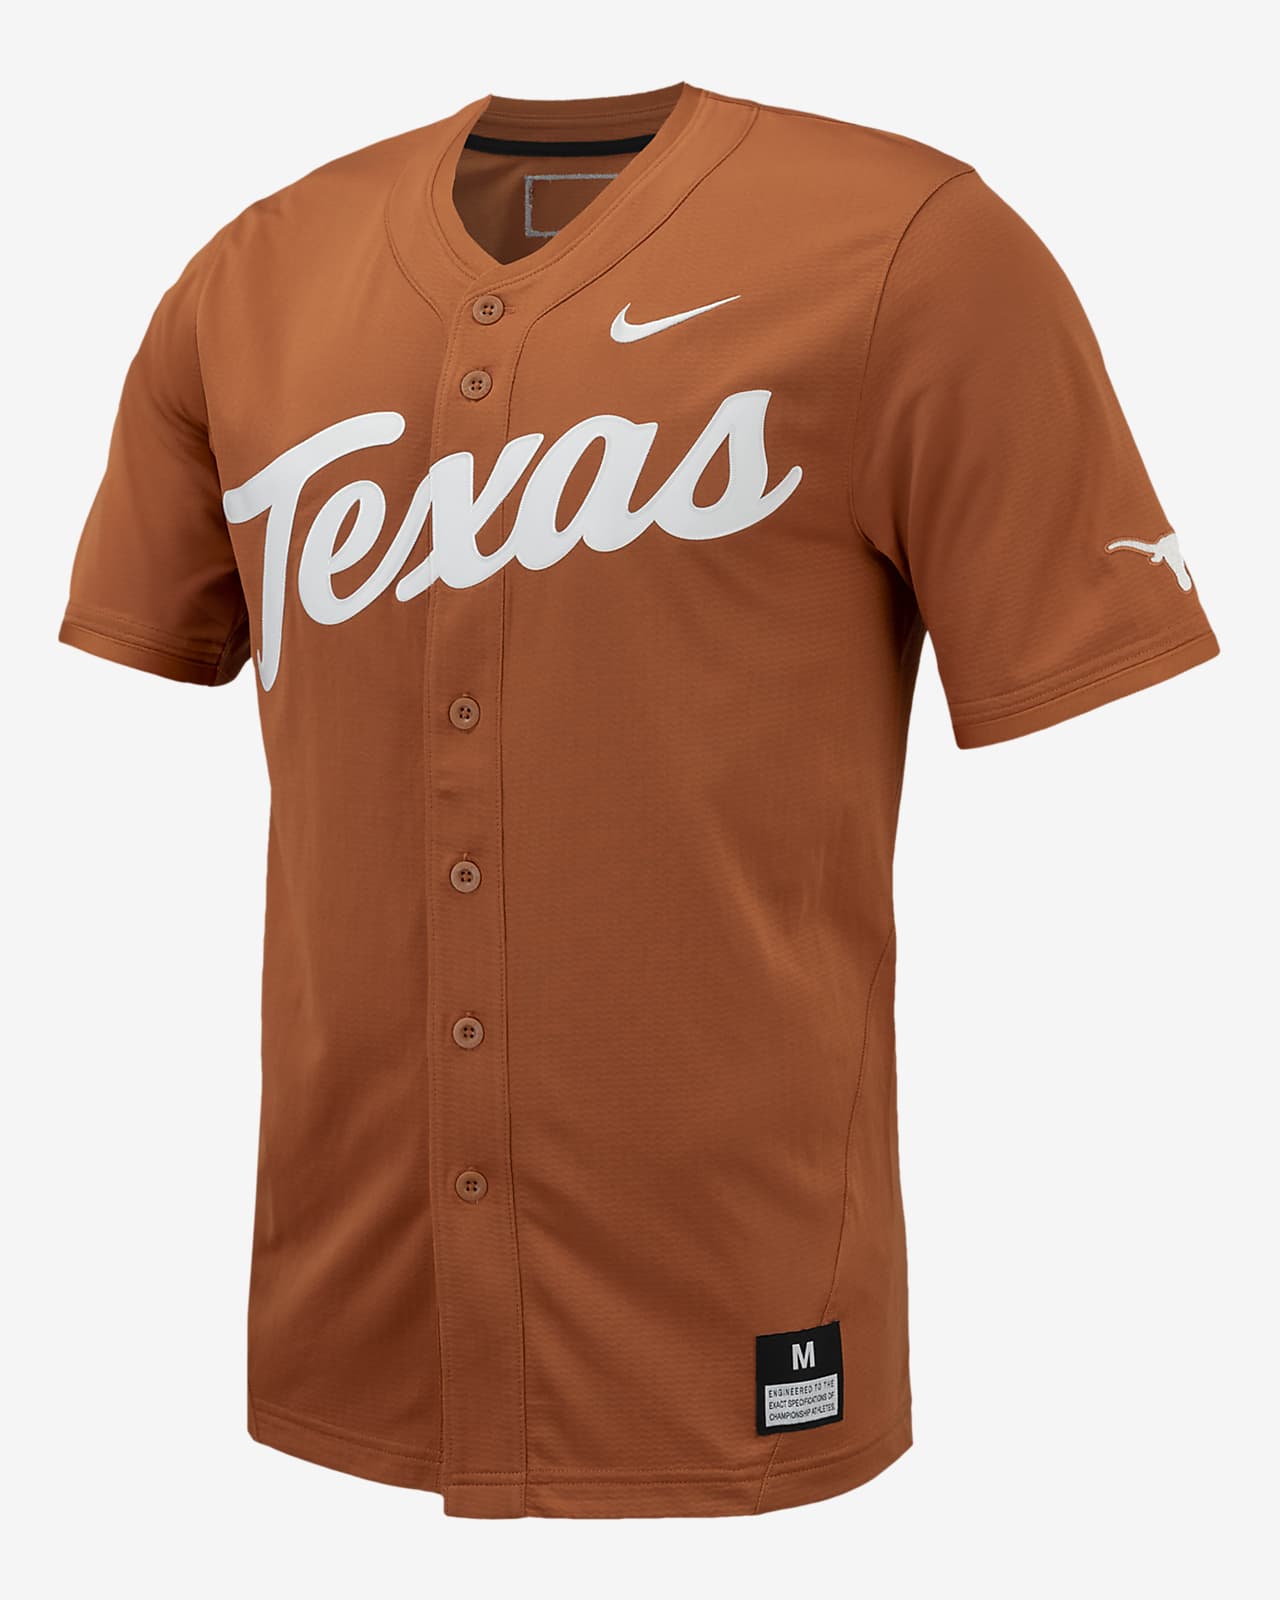 Jersey de béisbol universitario Nike Replica para hombre Texas